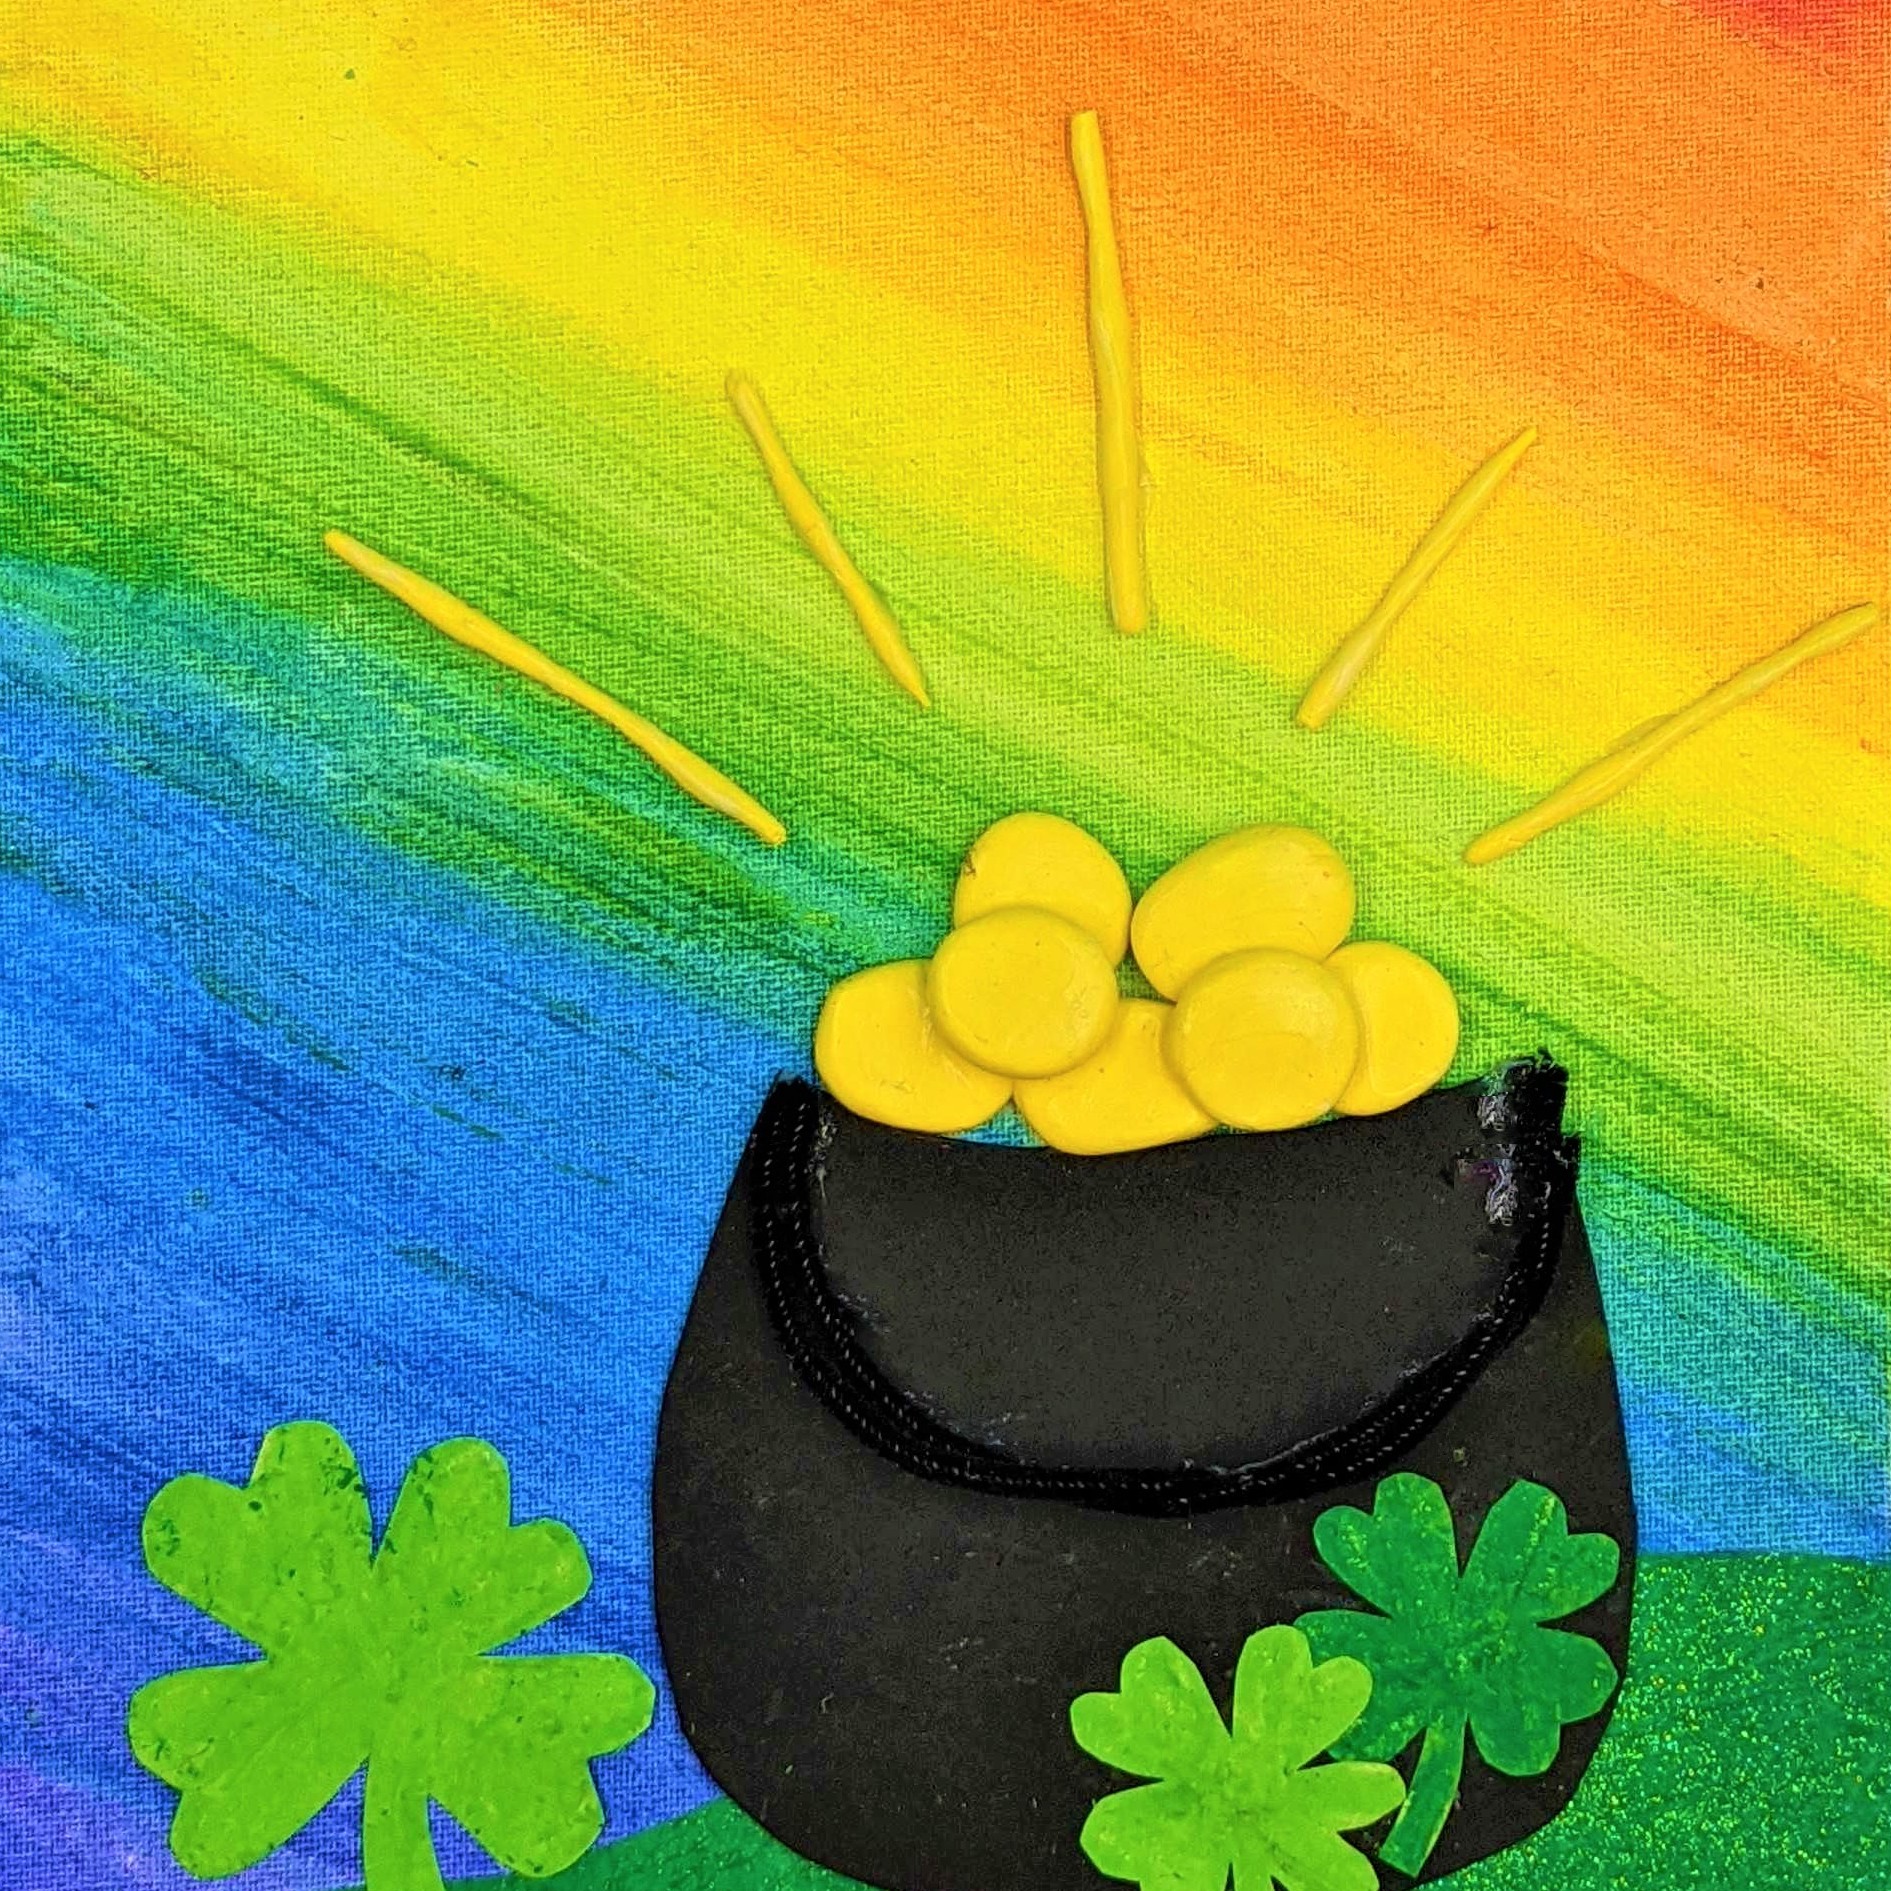 Kidcreate Studio - Woodbury, St. Patrick's Day Rainbow on Canvas Art Project